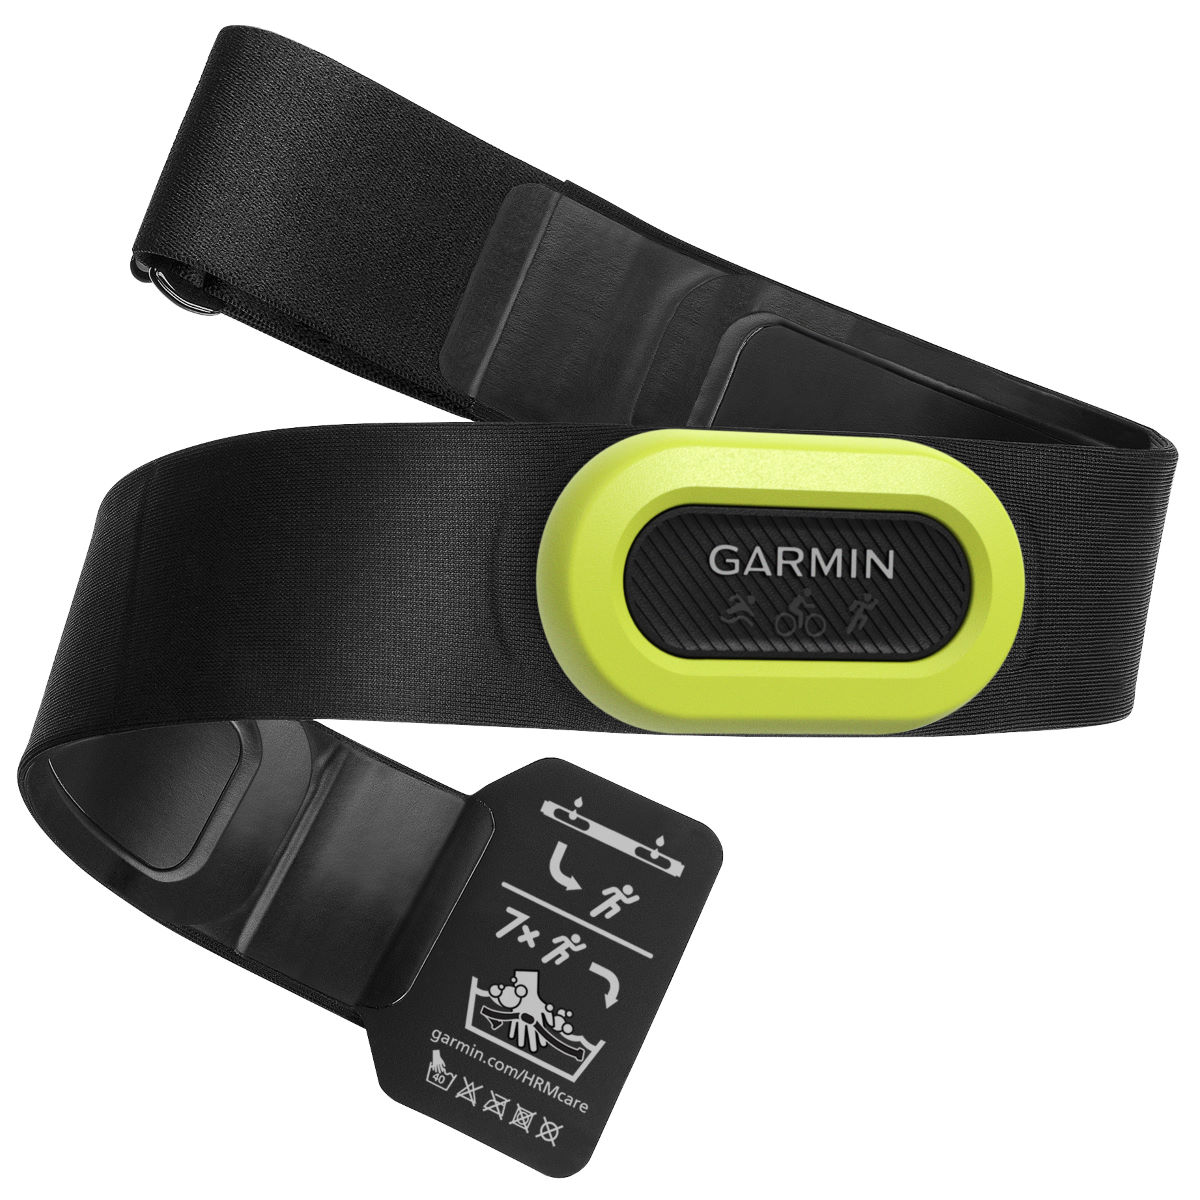 Monitor de frecuencia cardiaca Garmin HRM-Pro - Monitores de frecuencia cardíaca